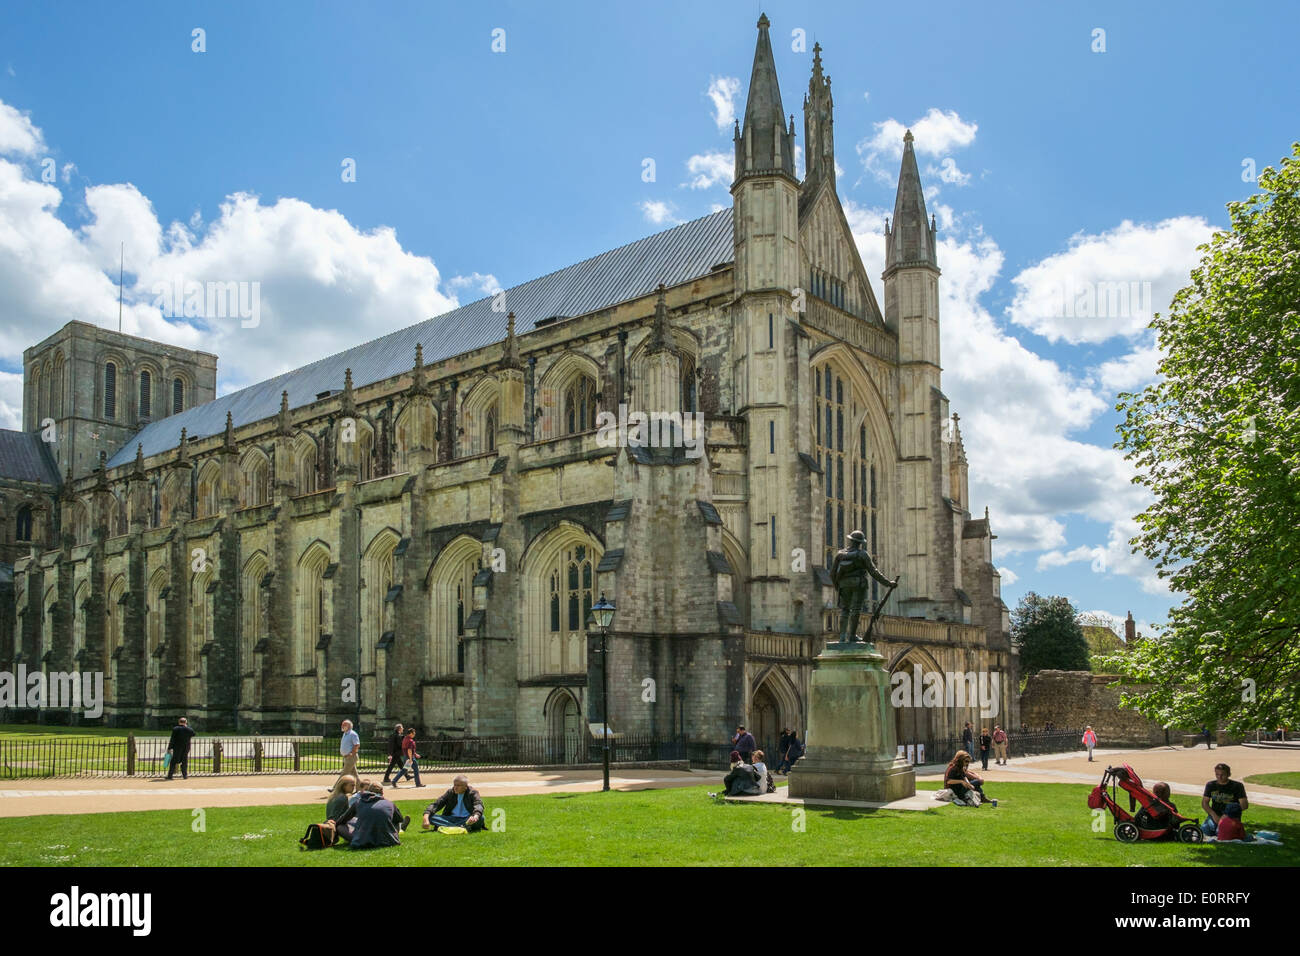 La cathédrale de Winchester, Hampshire, England, UK Banque D'Images